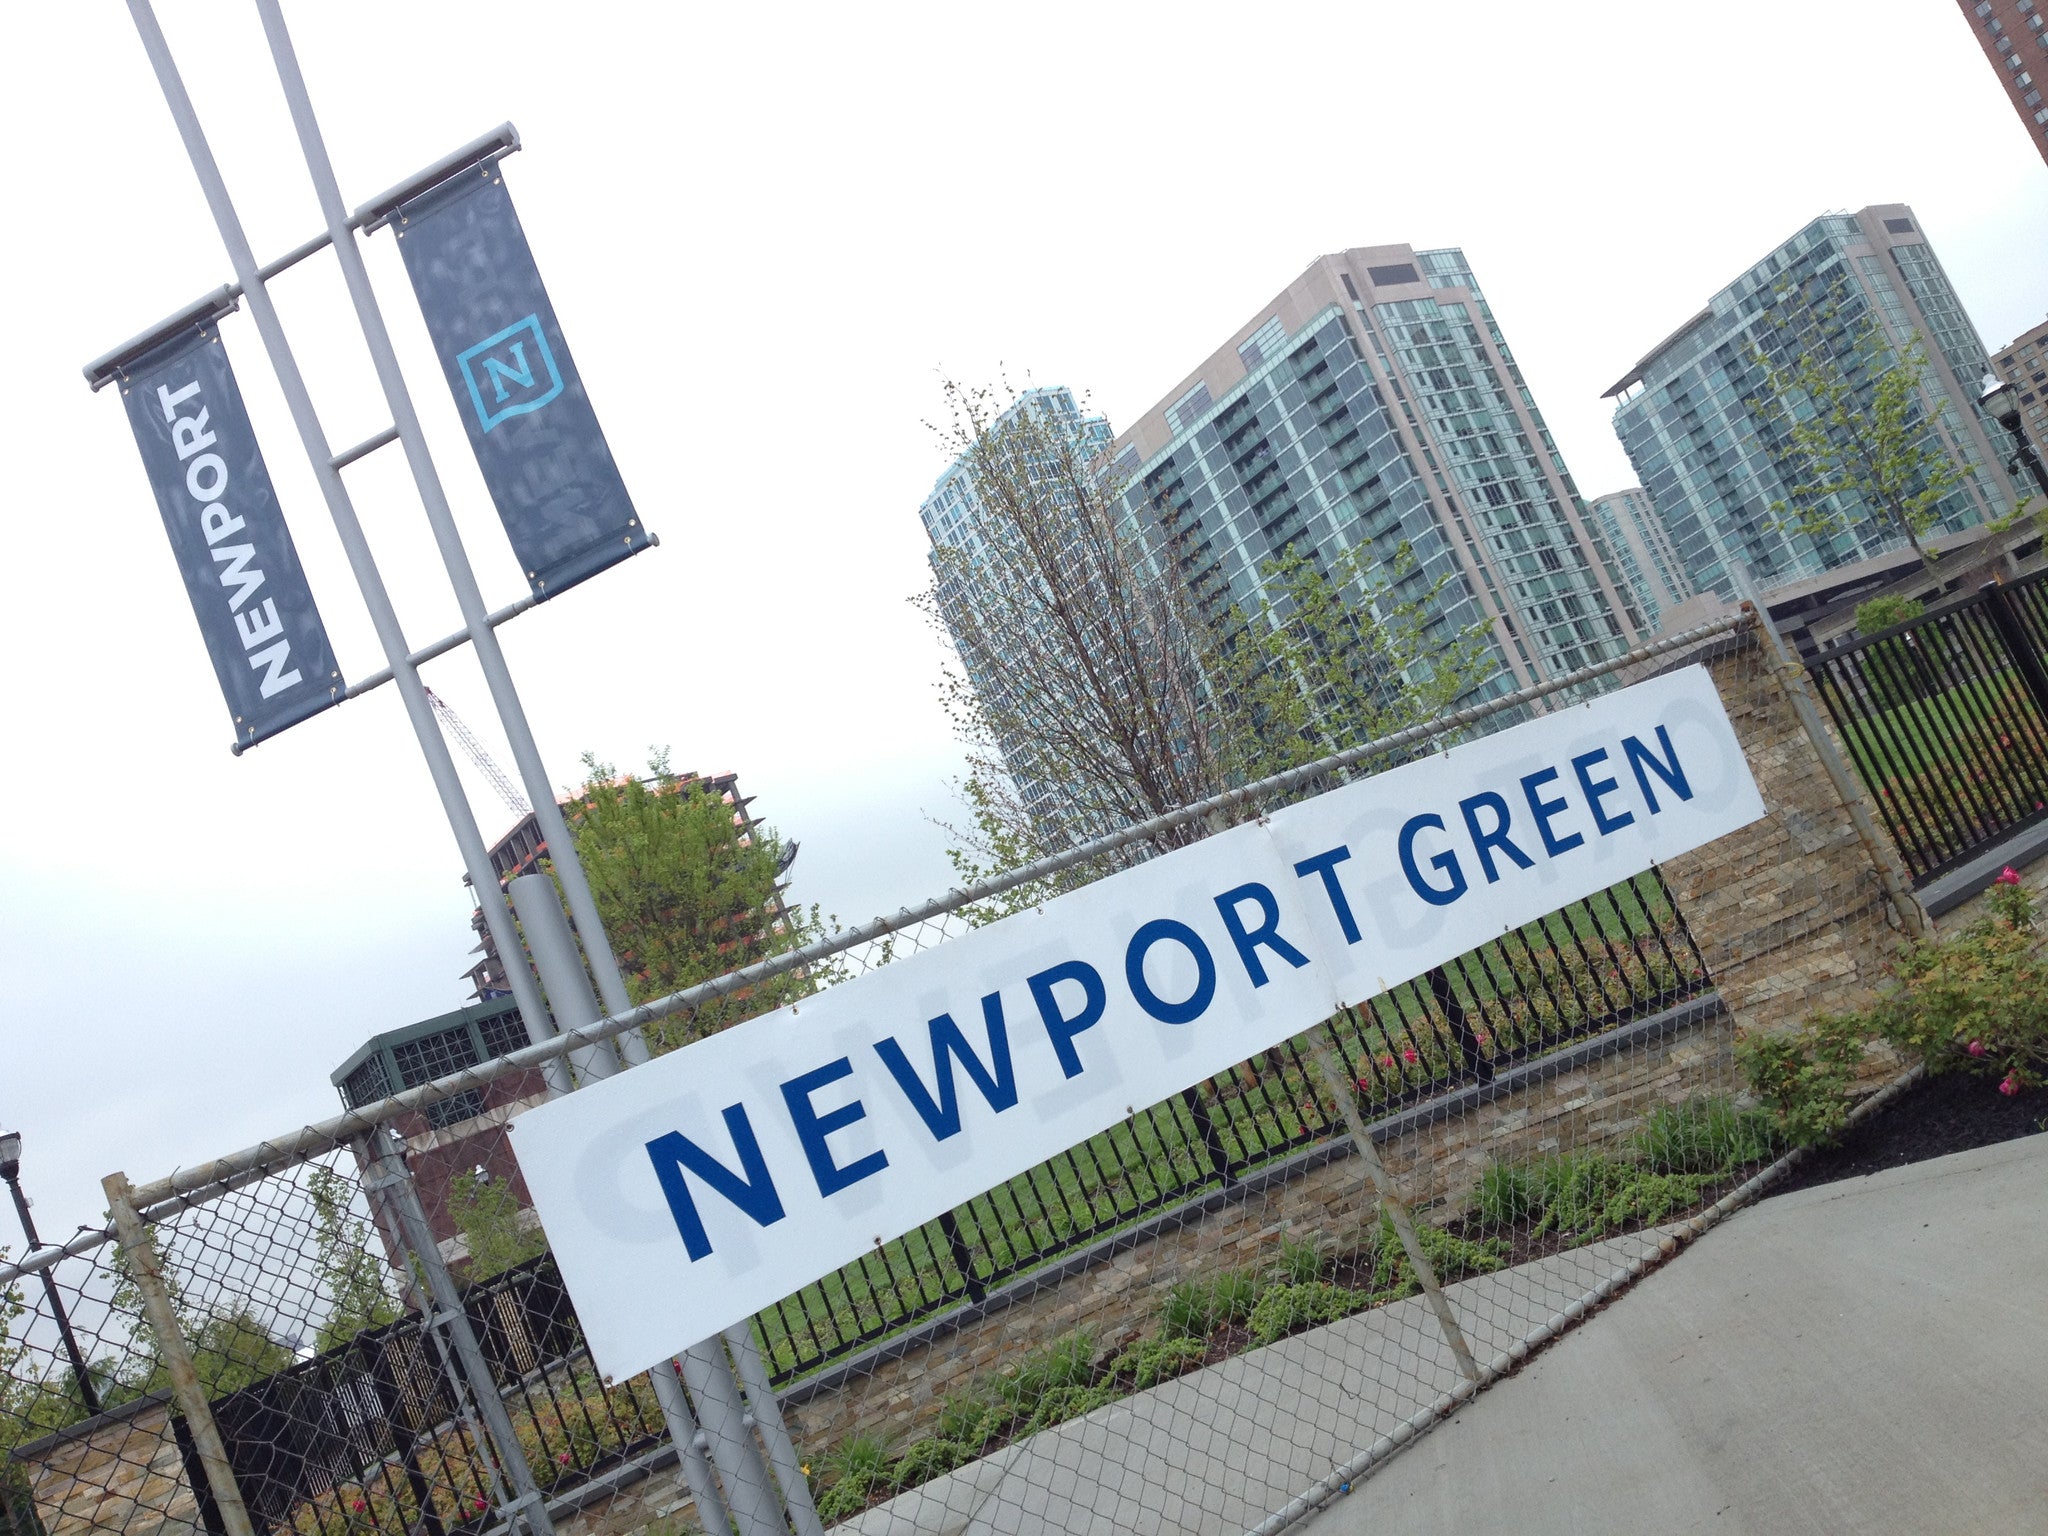 Newport Green Park